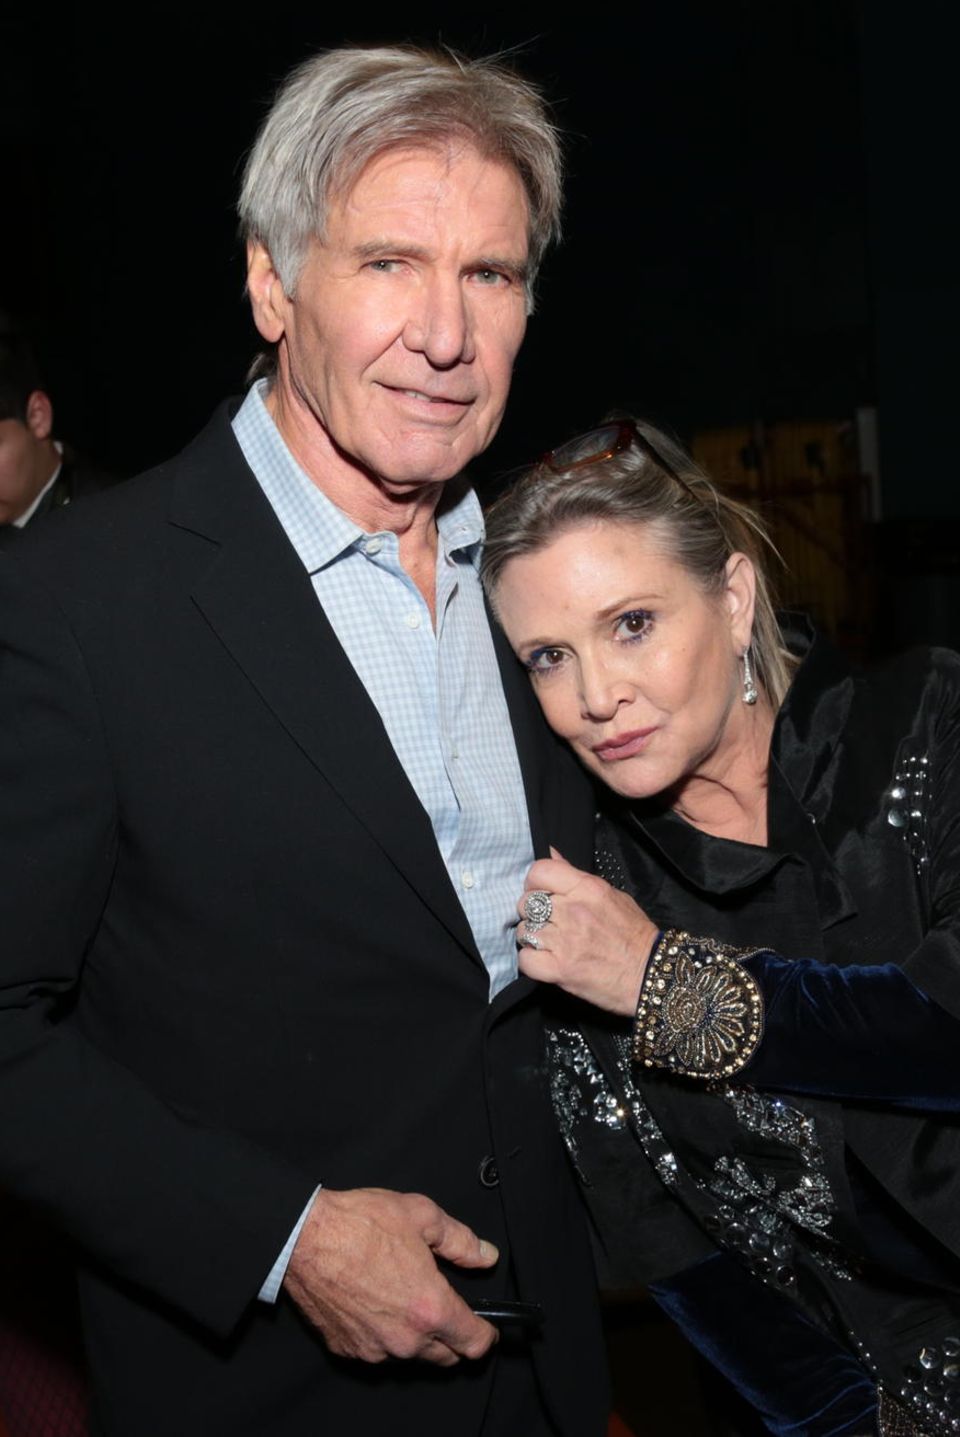 Harrison Ford und Carrie Fisher (†), die Stars aus der "Krieg der Sterne"-Reihe, kamen sich in den 1970ern während Dreharbeiten näher